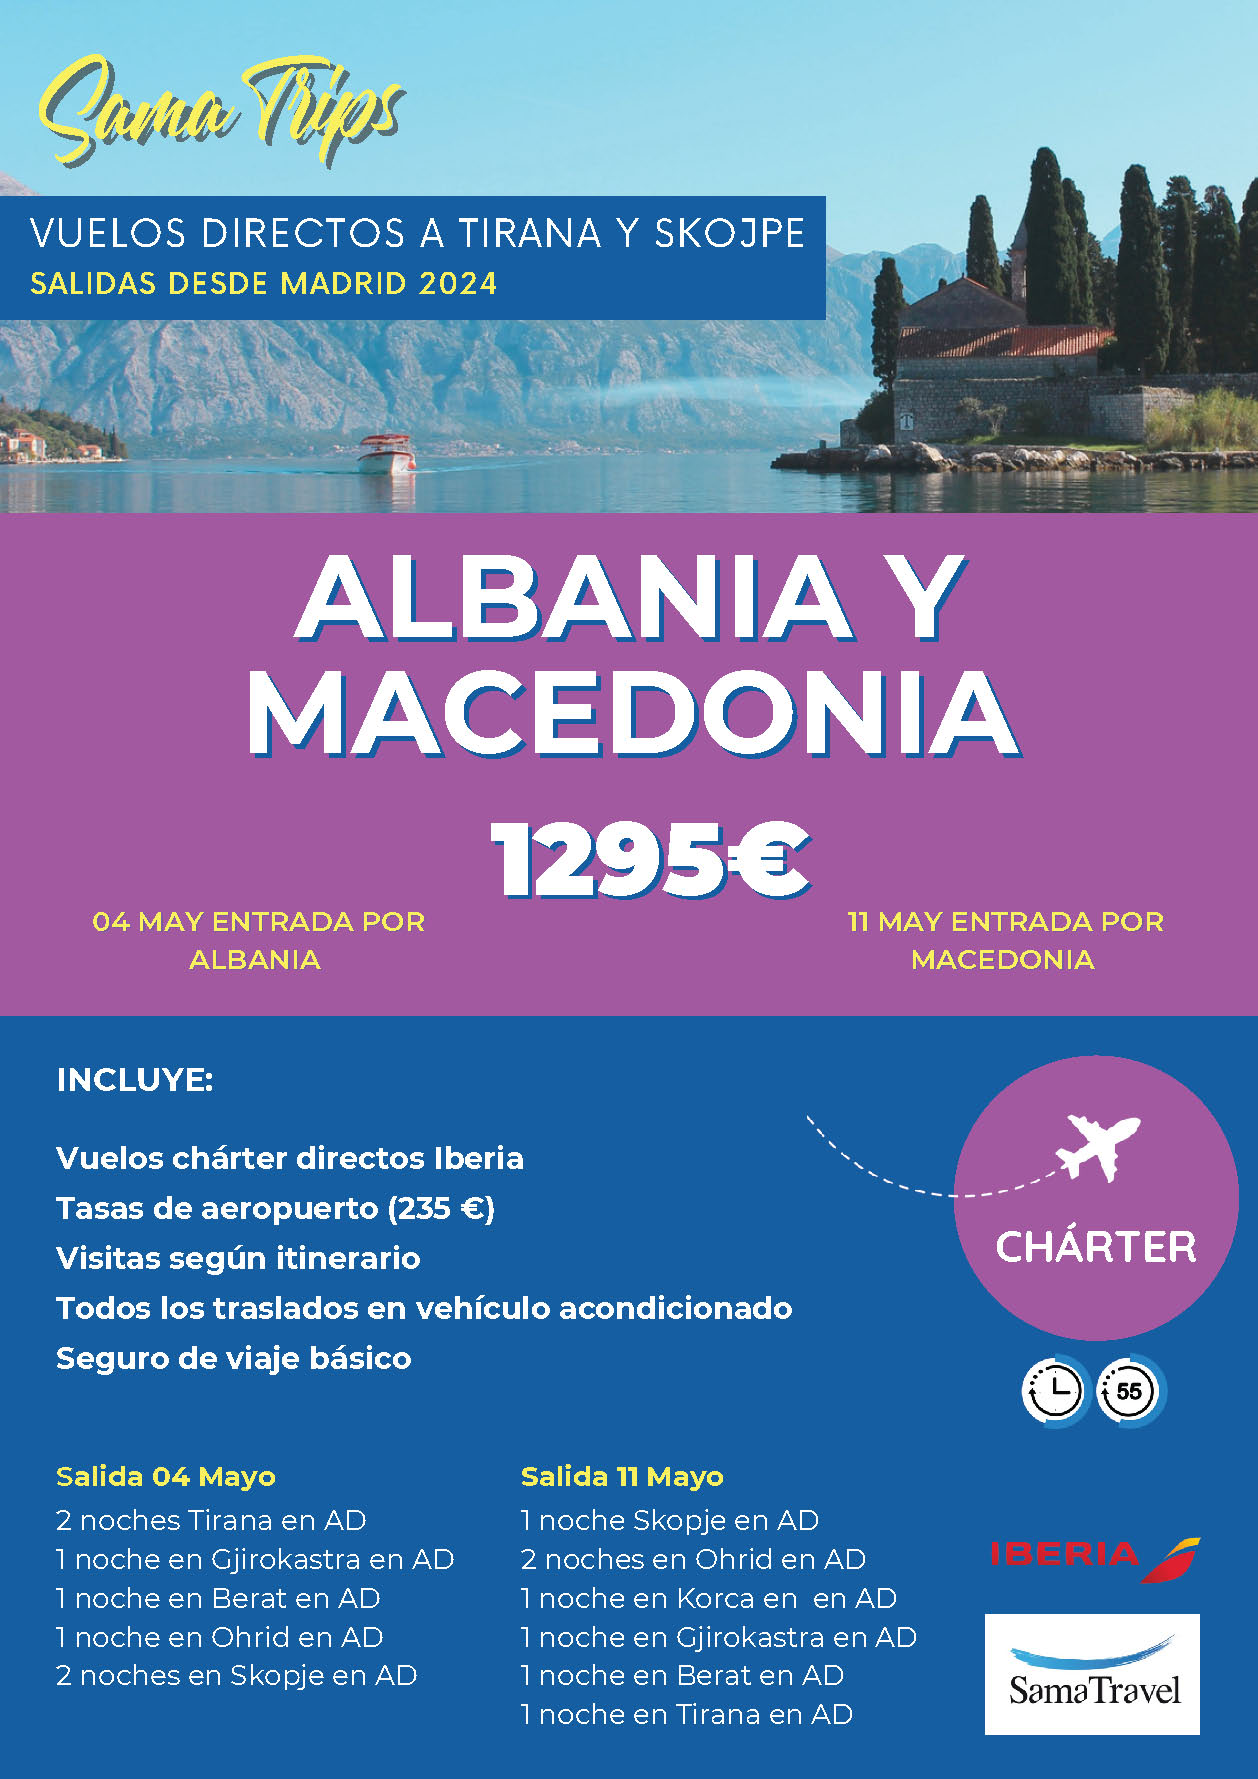 Oferta Sama Travel circuito Albania y Macedonia Senior 8 dias salidas Mayo 2024 vuelo especial directo desde Madrid